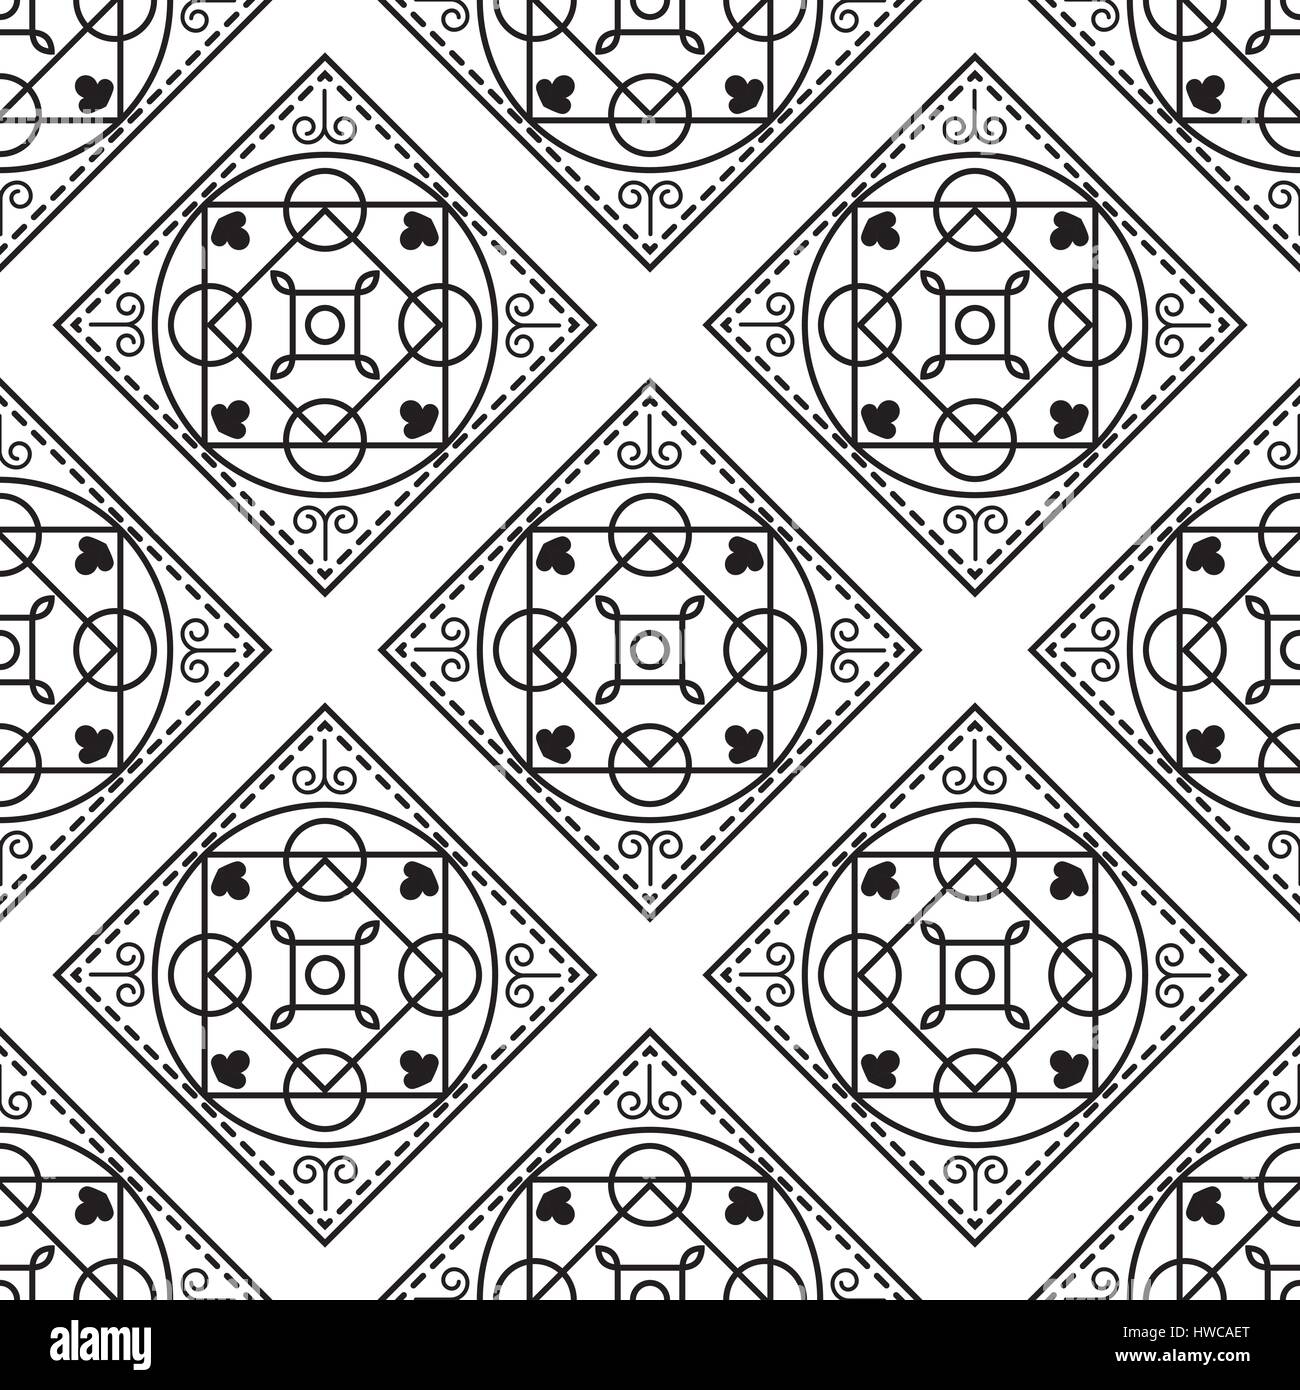 Portugiesische schwarz-weiß mediterrane nahtlose Kachelmuster. Monochrome  geometrische Formen Vektor-Textur für Keramik-Design, Textil- und Tapete  Stock-Vektorgrafik - Alamy